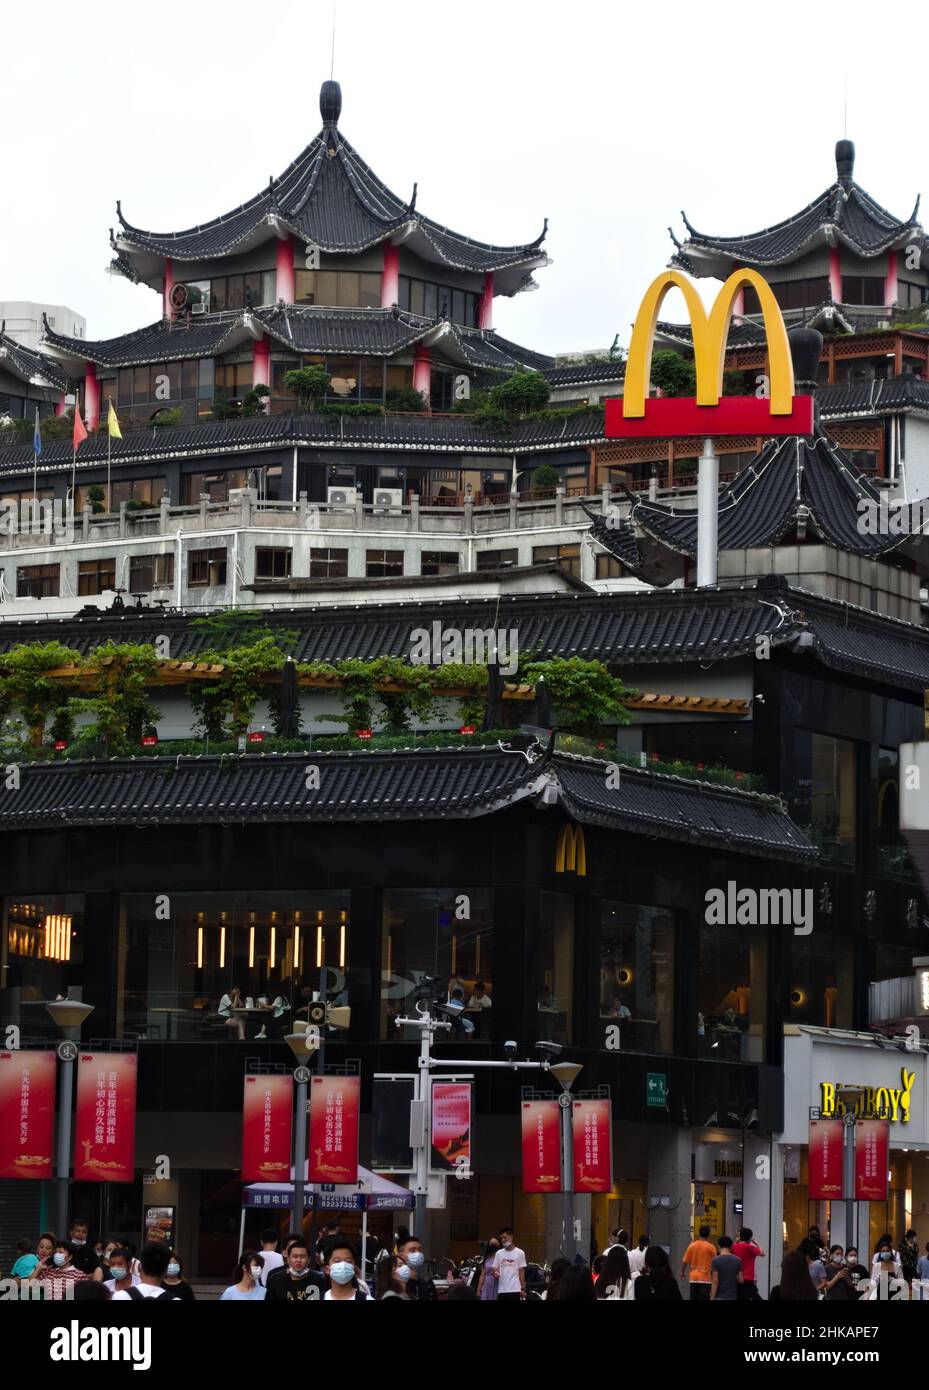 Logotipo de McDonald's visto entre las pagodas chinas en Shenzhen, China Foto de stock